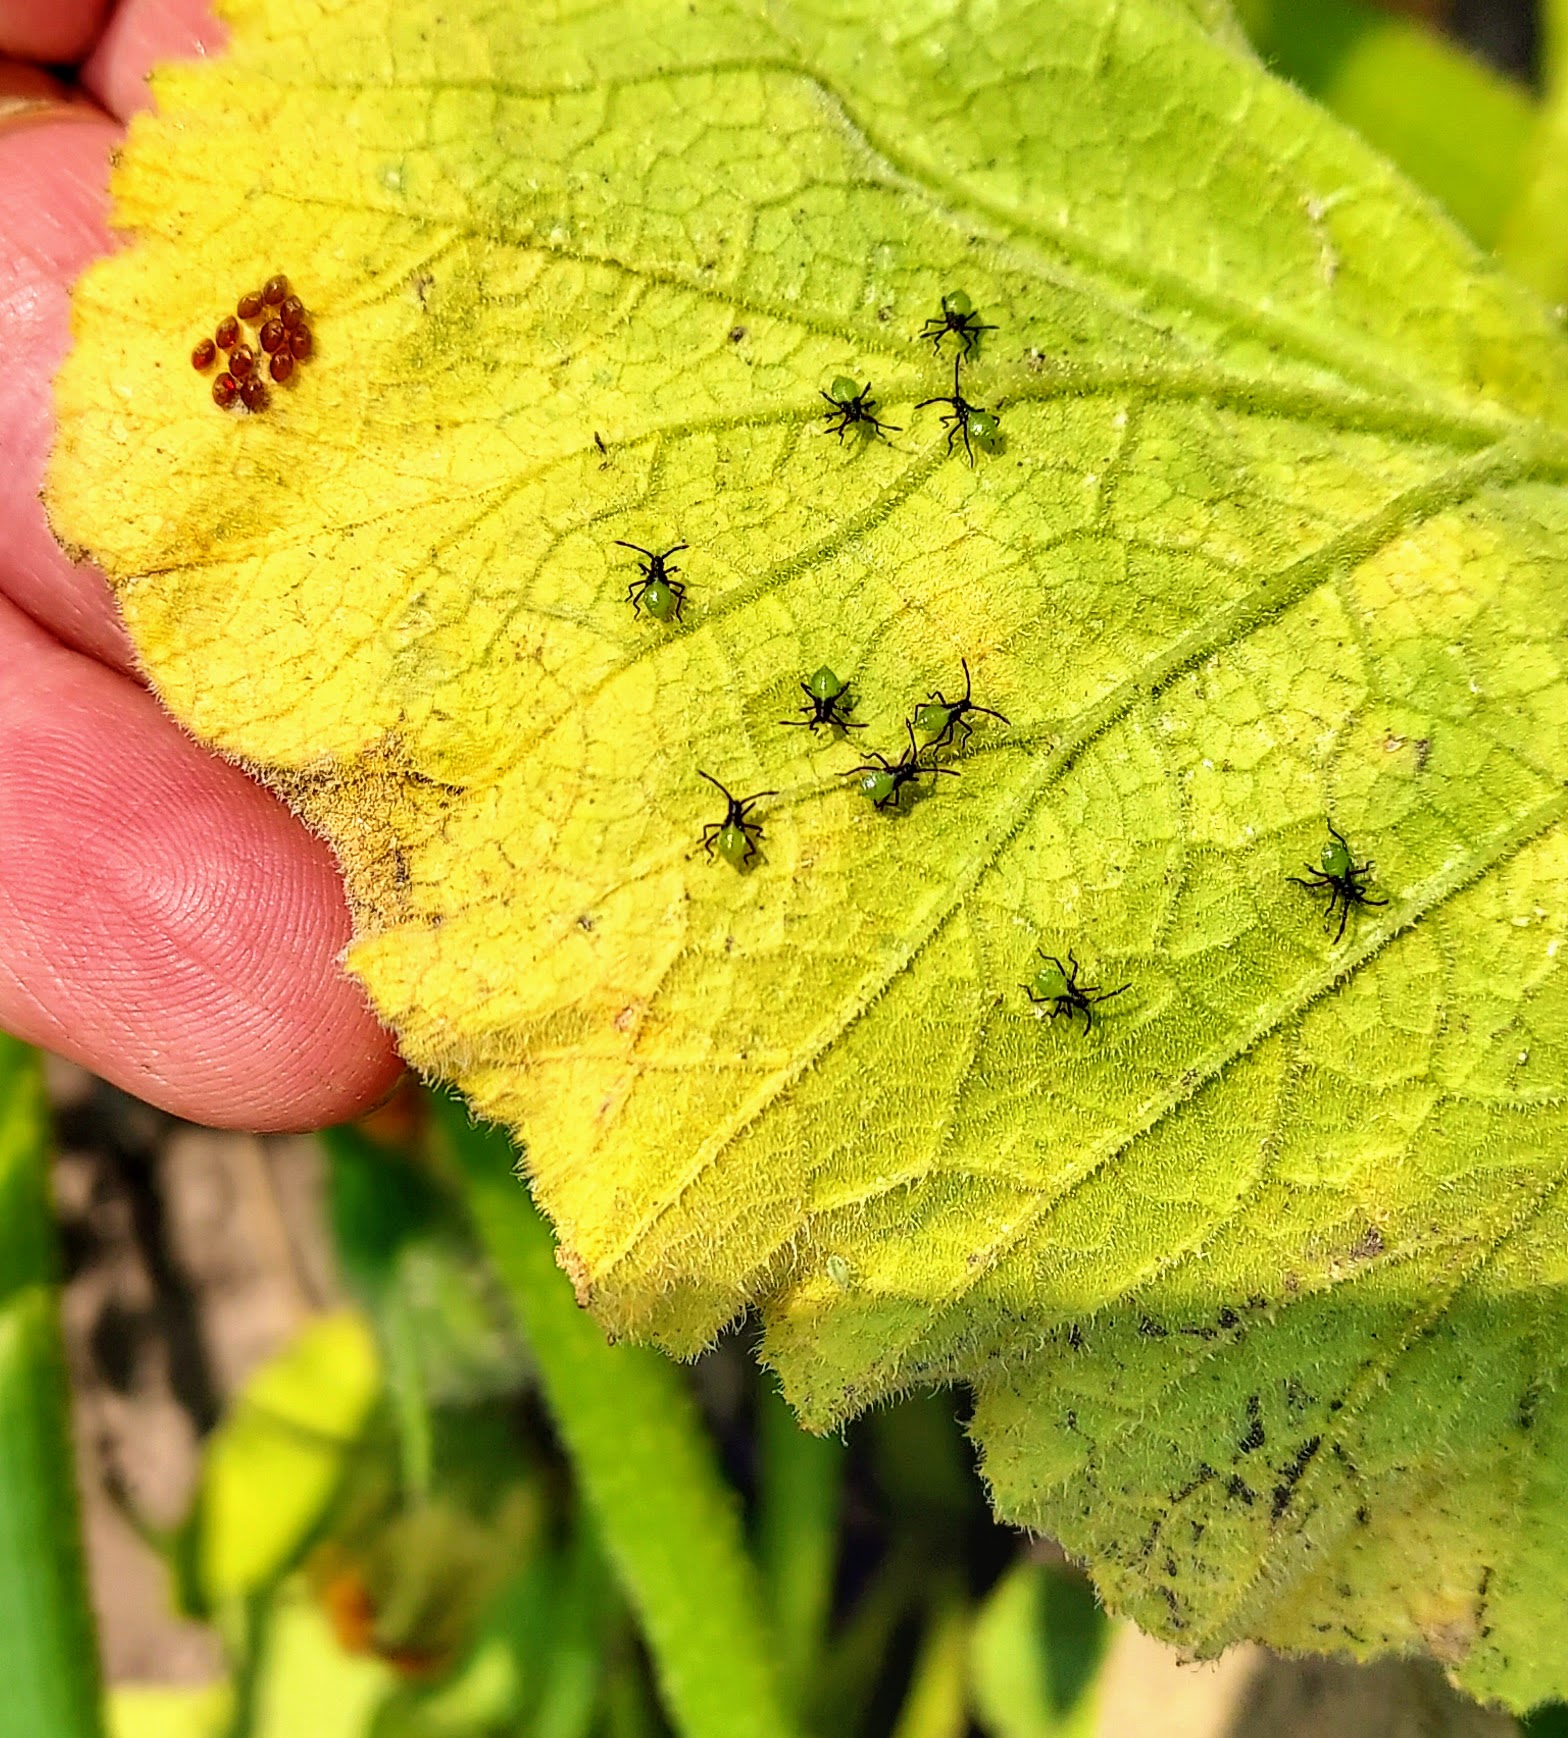 Squash bug nymphs on leaf.